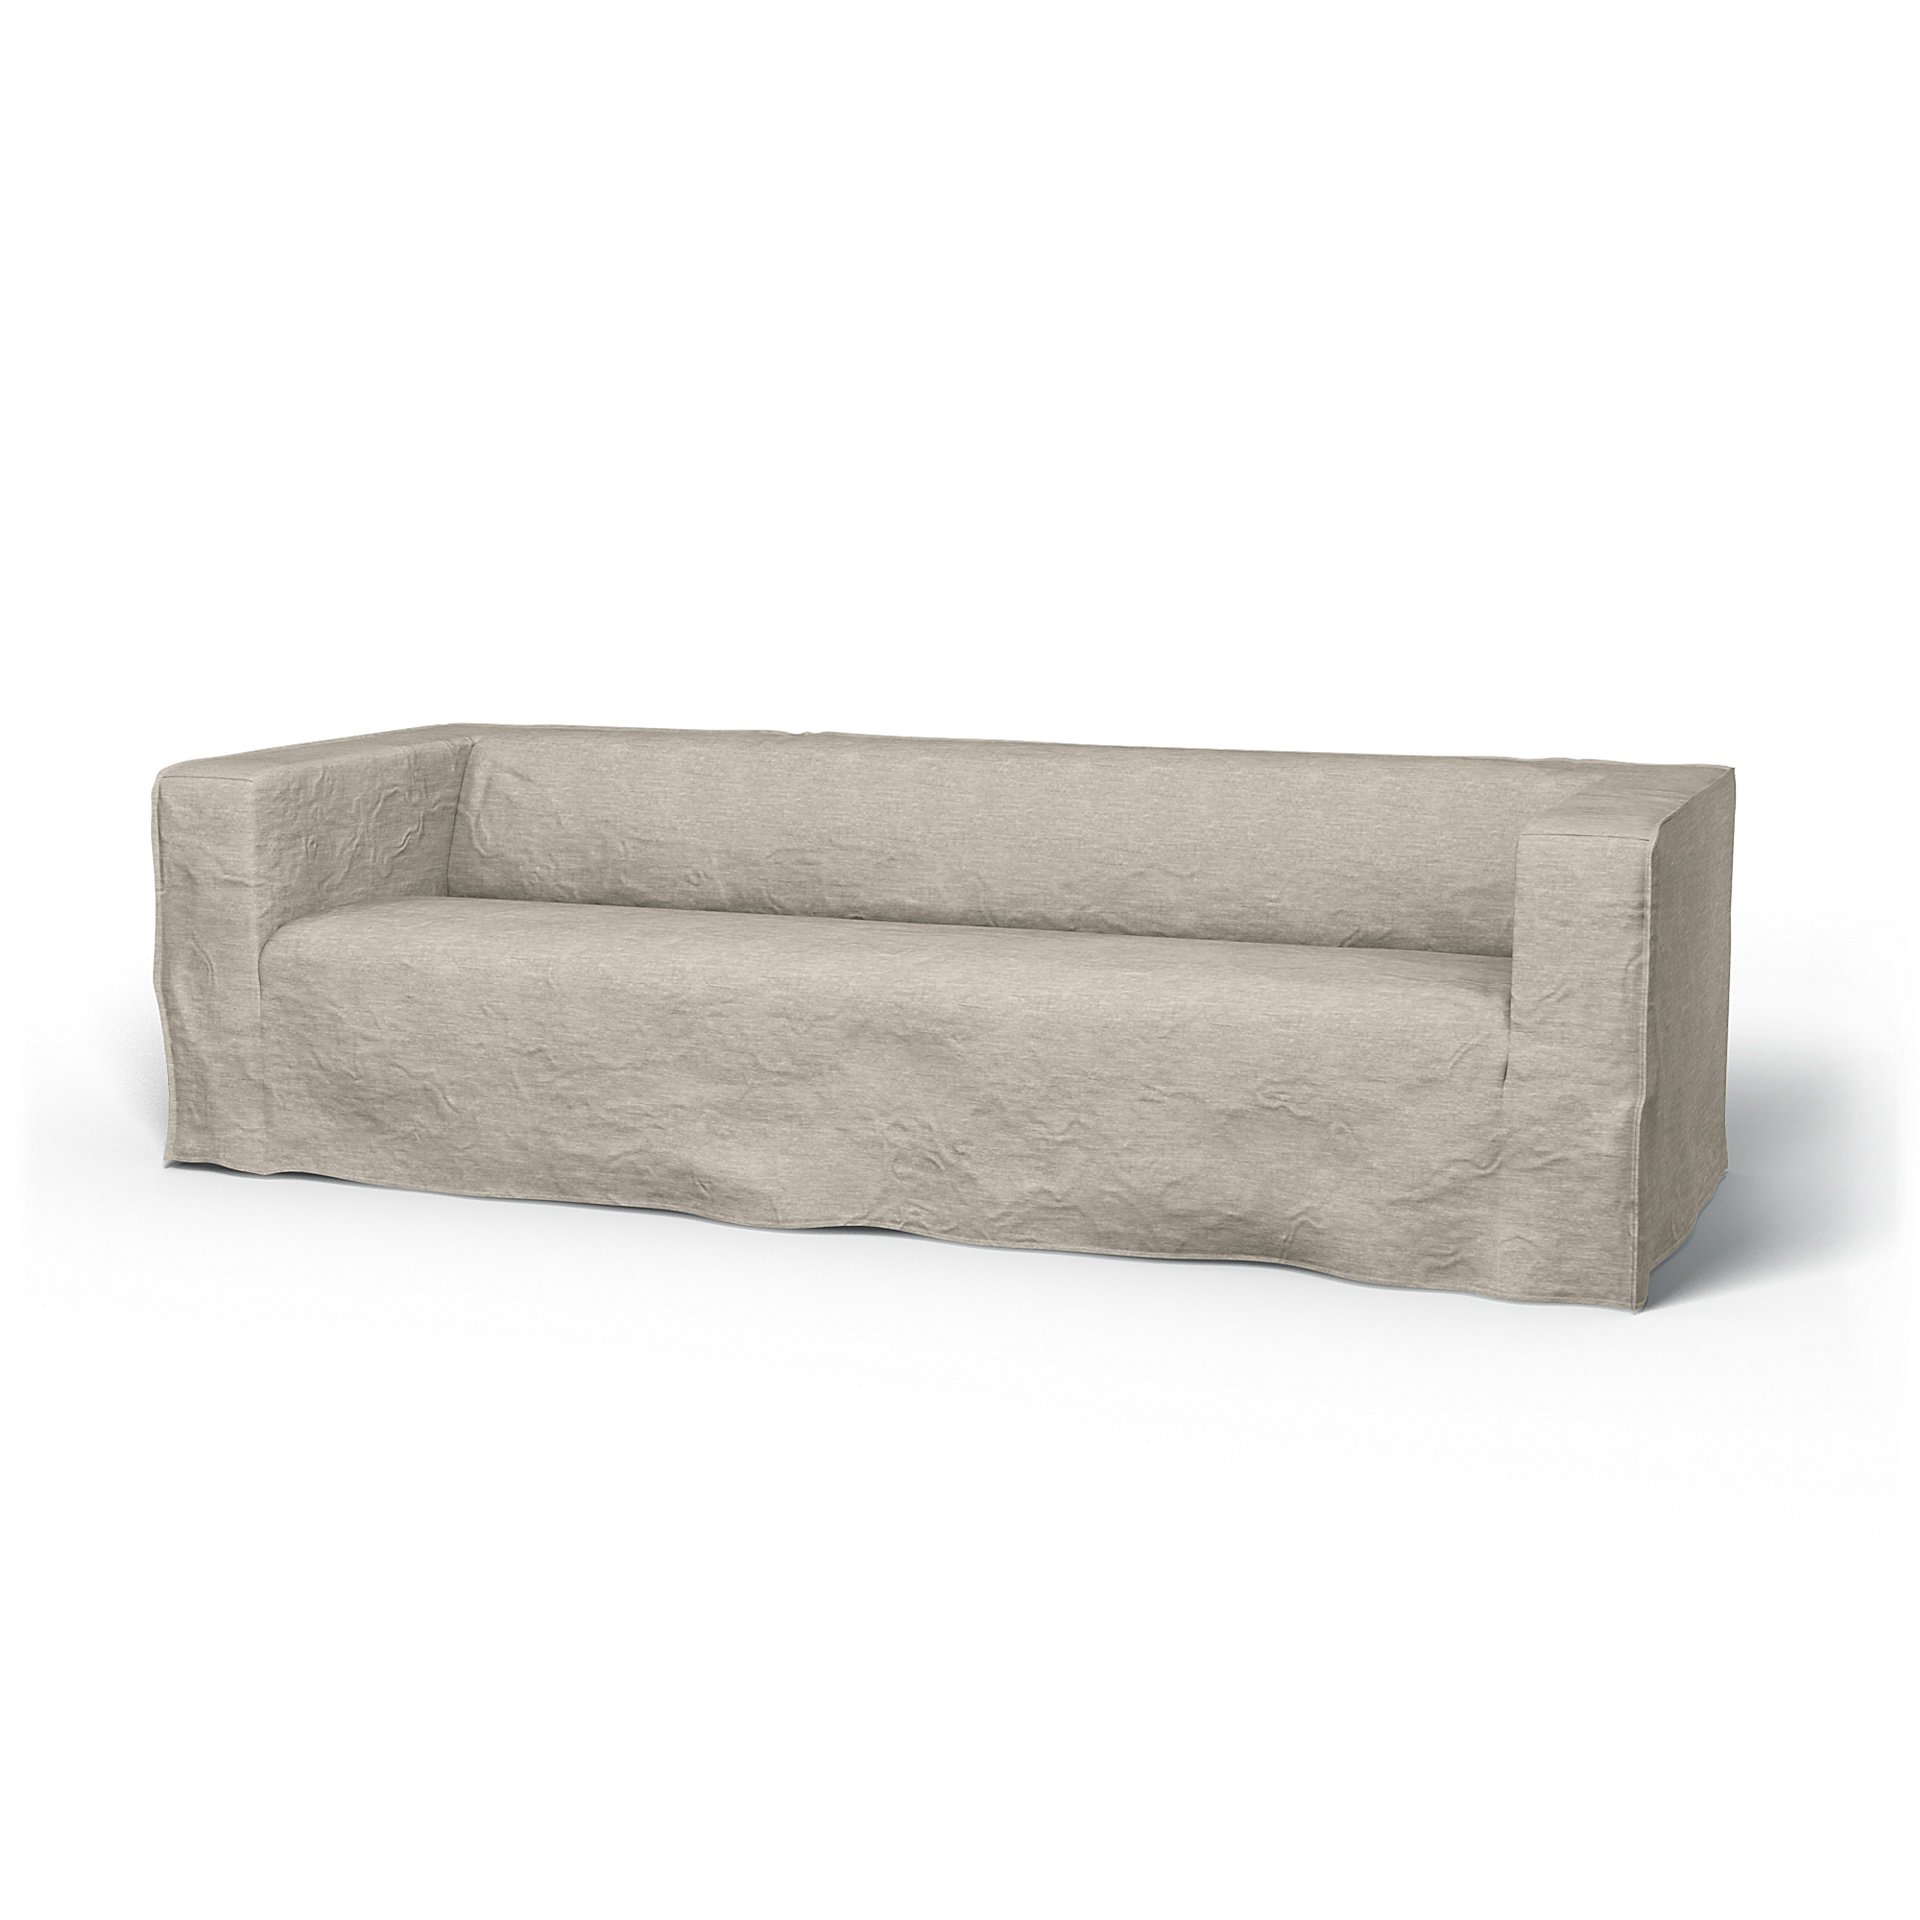 IKEA - Klippan 4 Seater Sofa Cover, Natural White, Velvet - Bemz